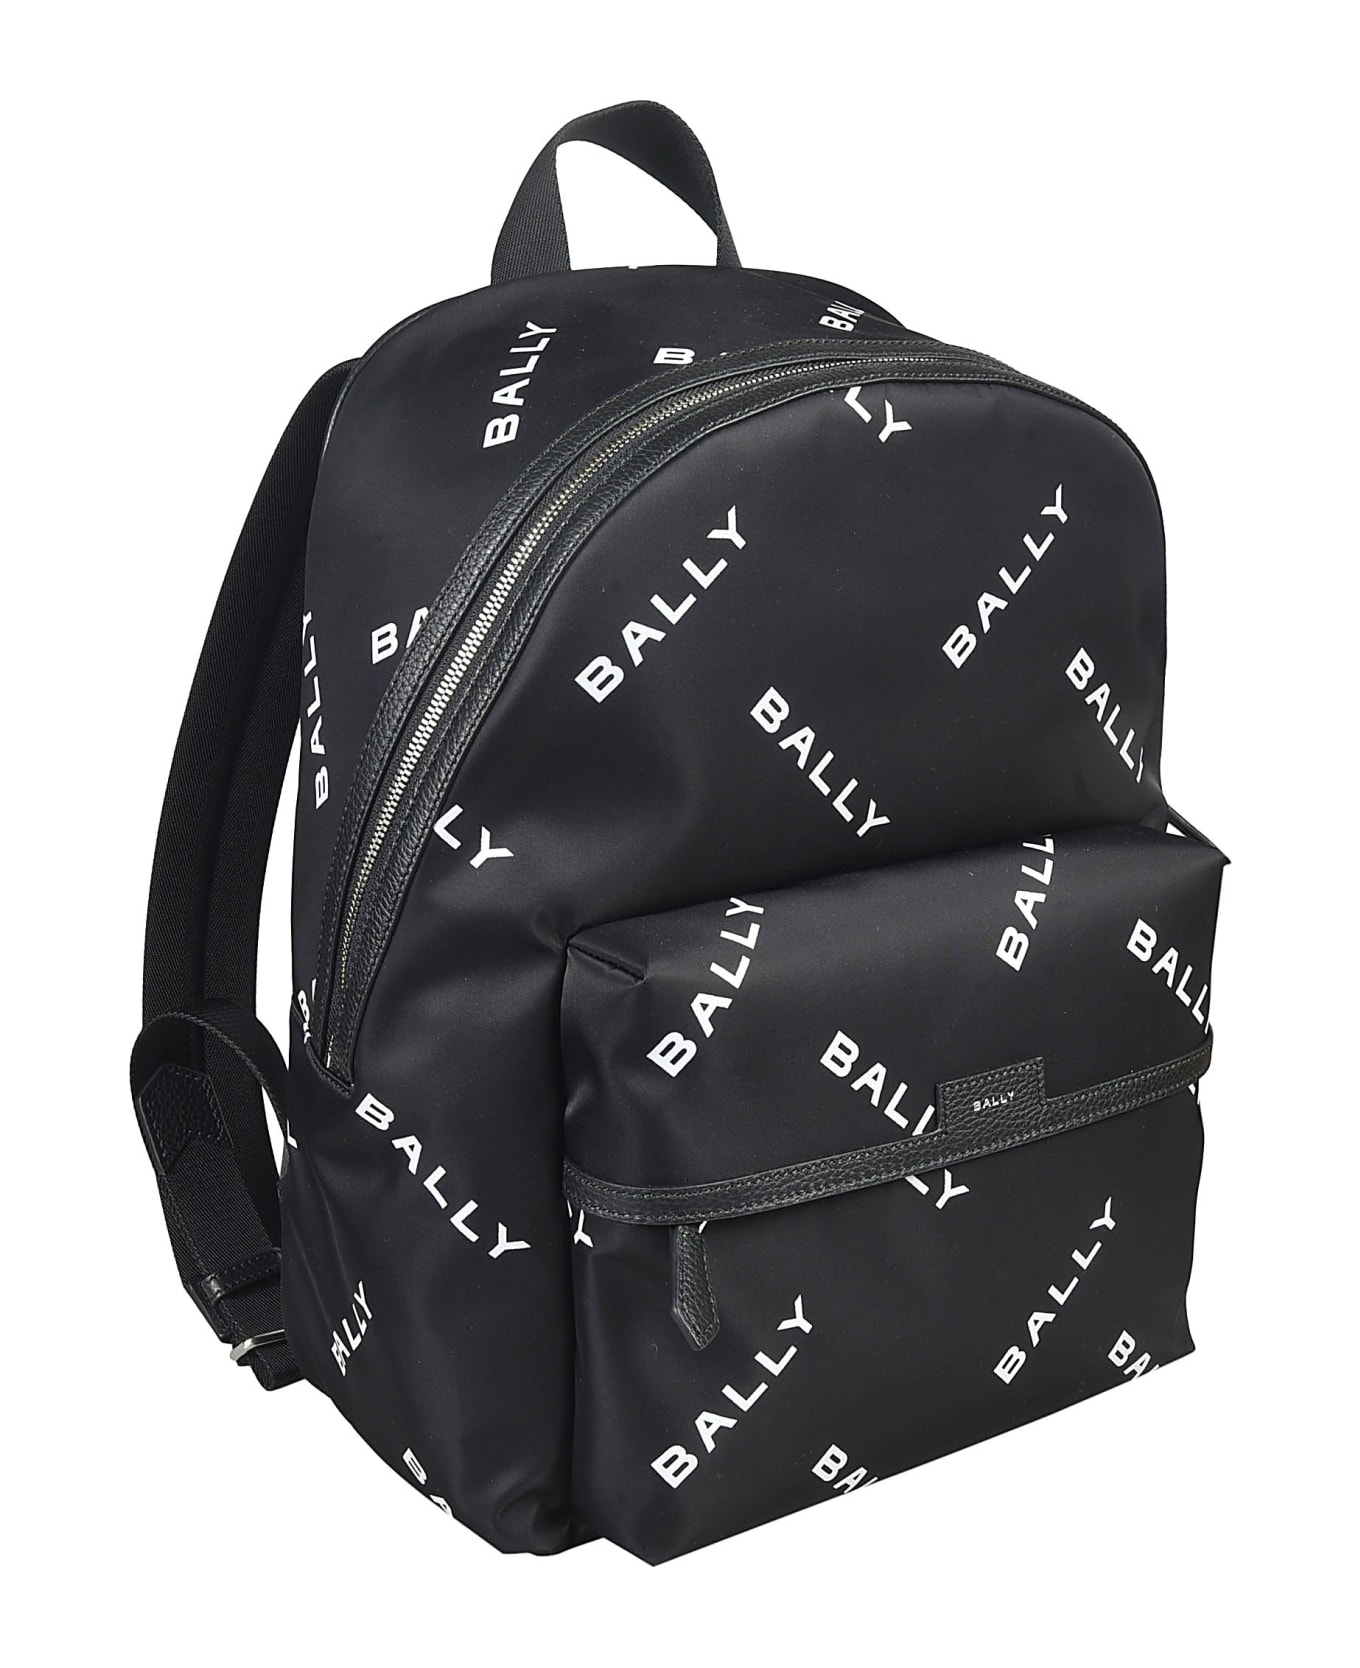 Bally Code Backpack - Black/White バックパック